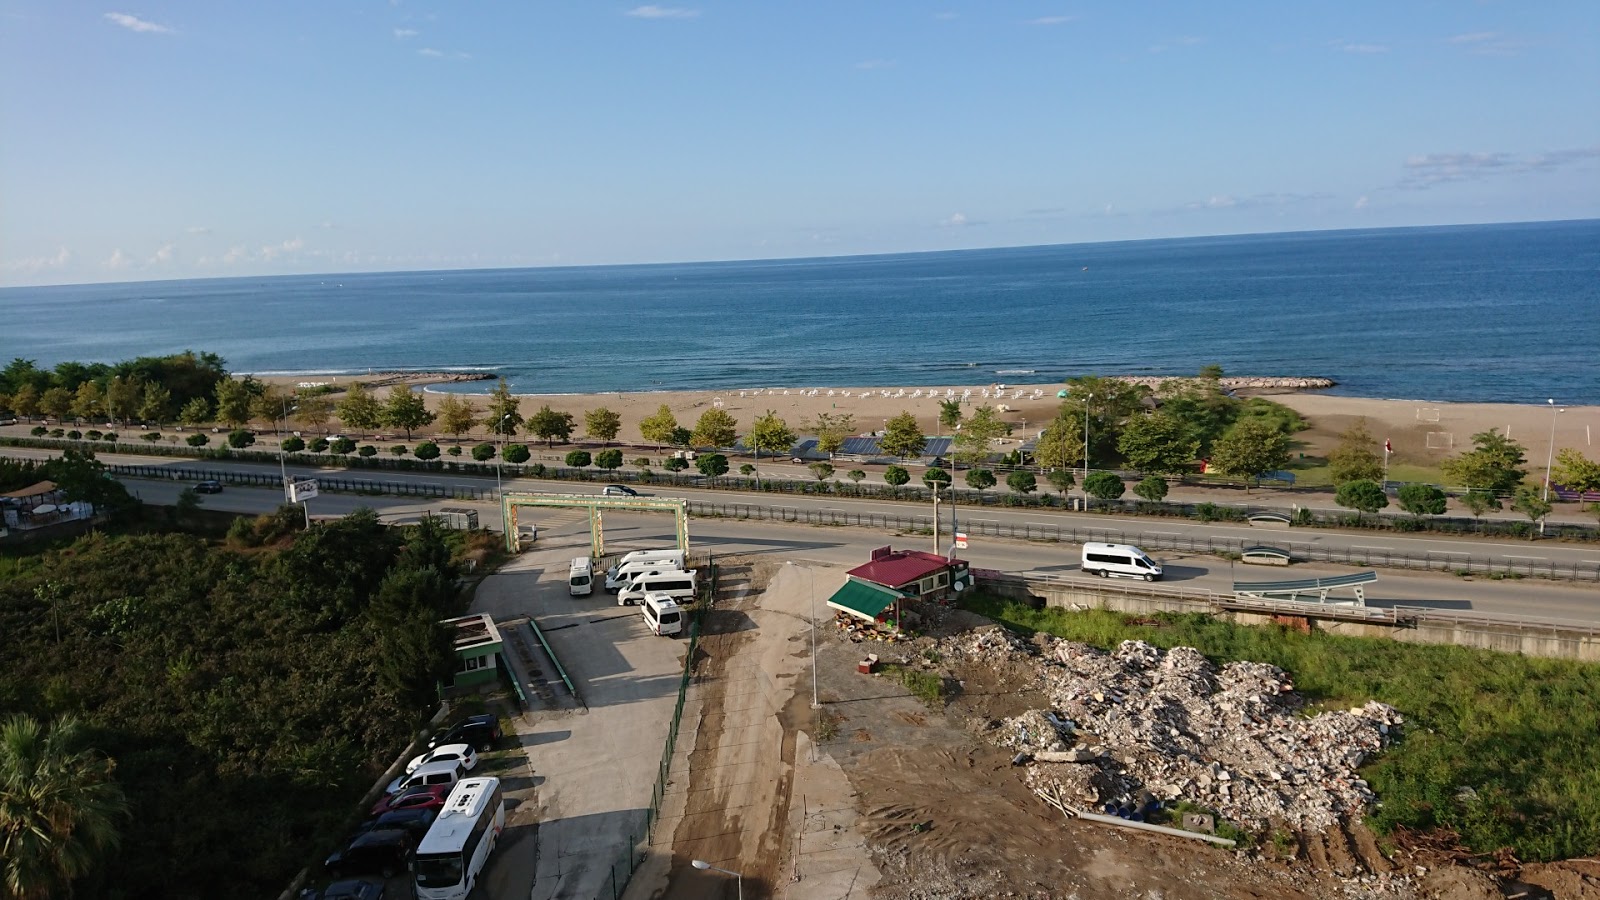 Municipal Beach'in fotoğrafı turkuaz saf su yüzey ile